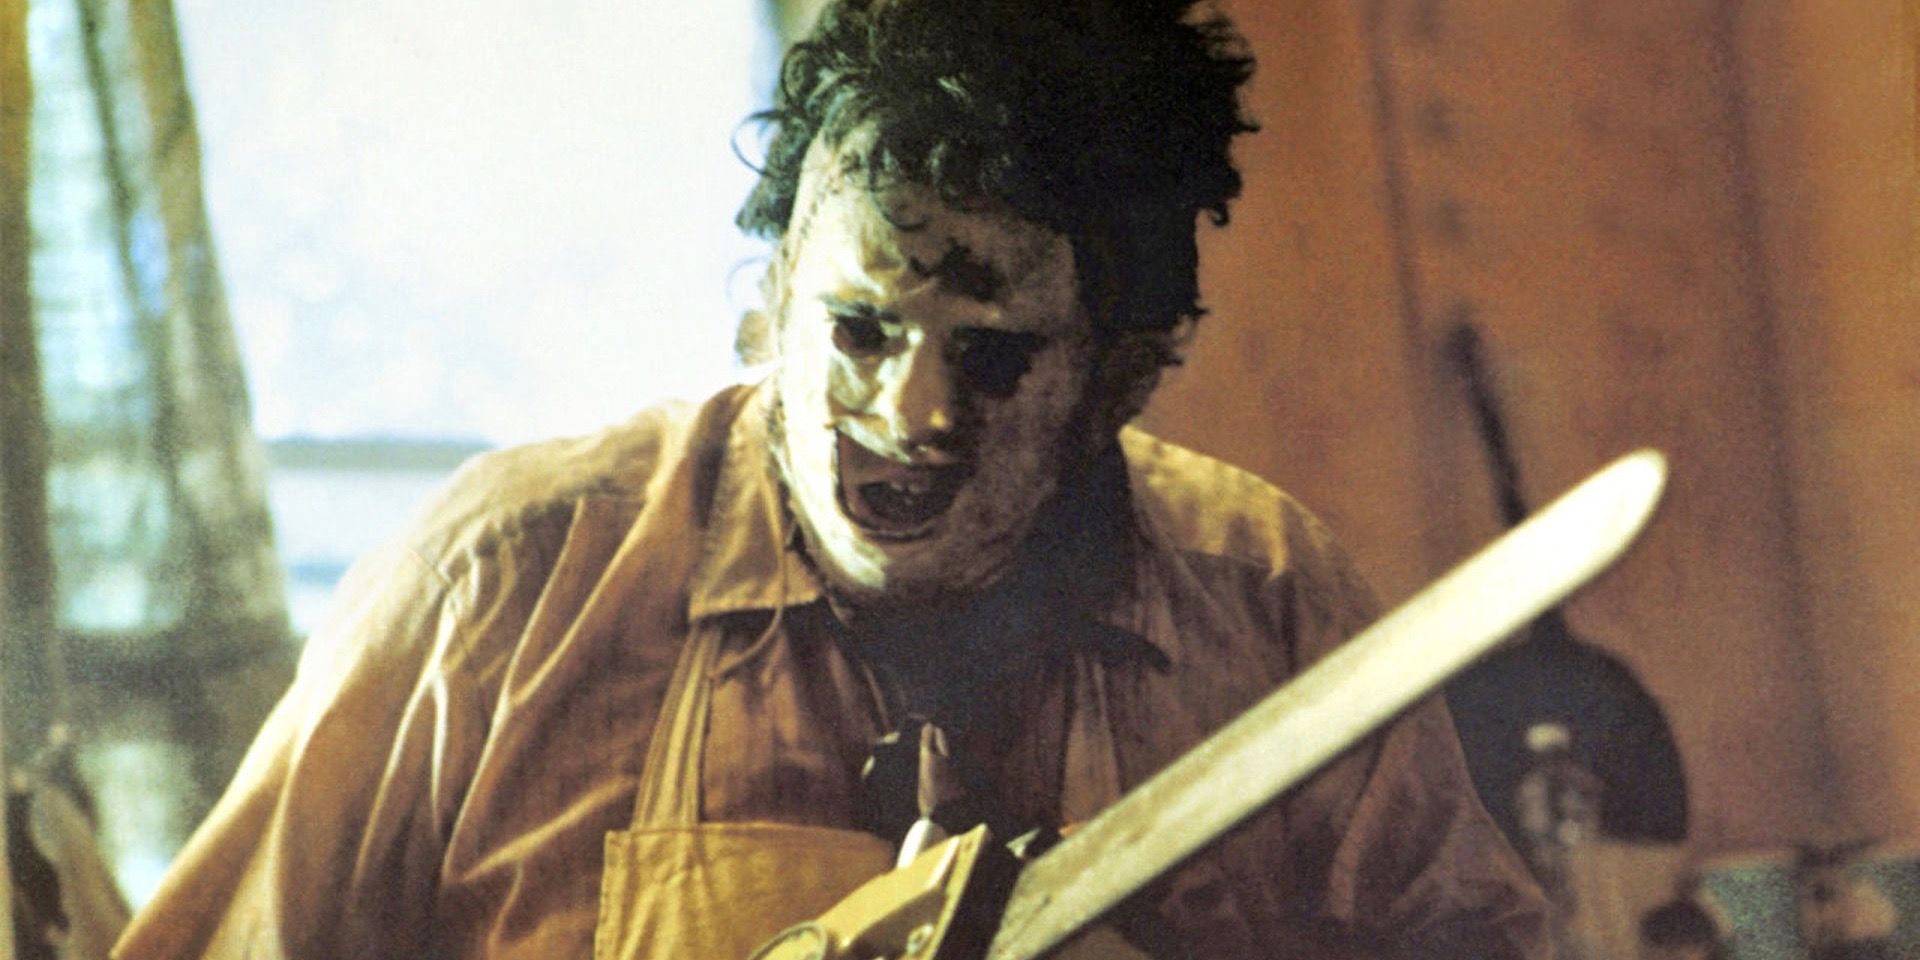 Gunnar Hansen as Leatherface in The Texas Chain saw Massacre